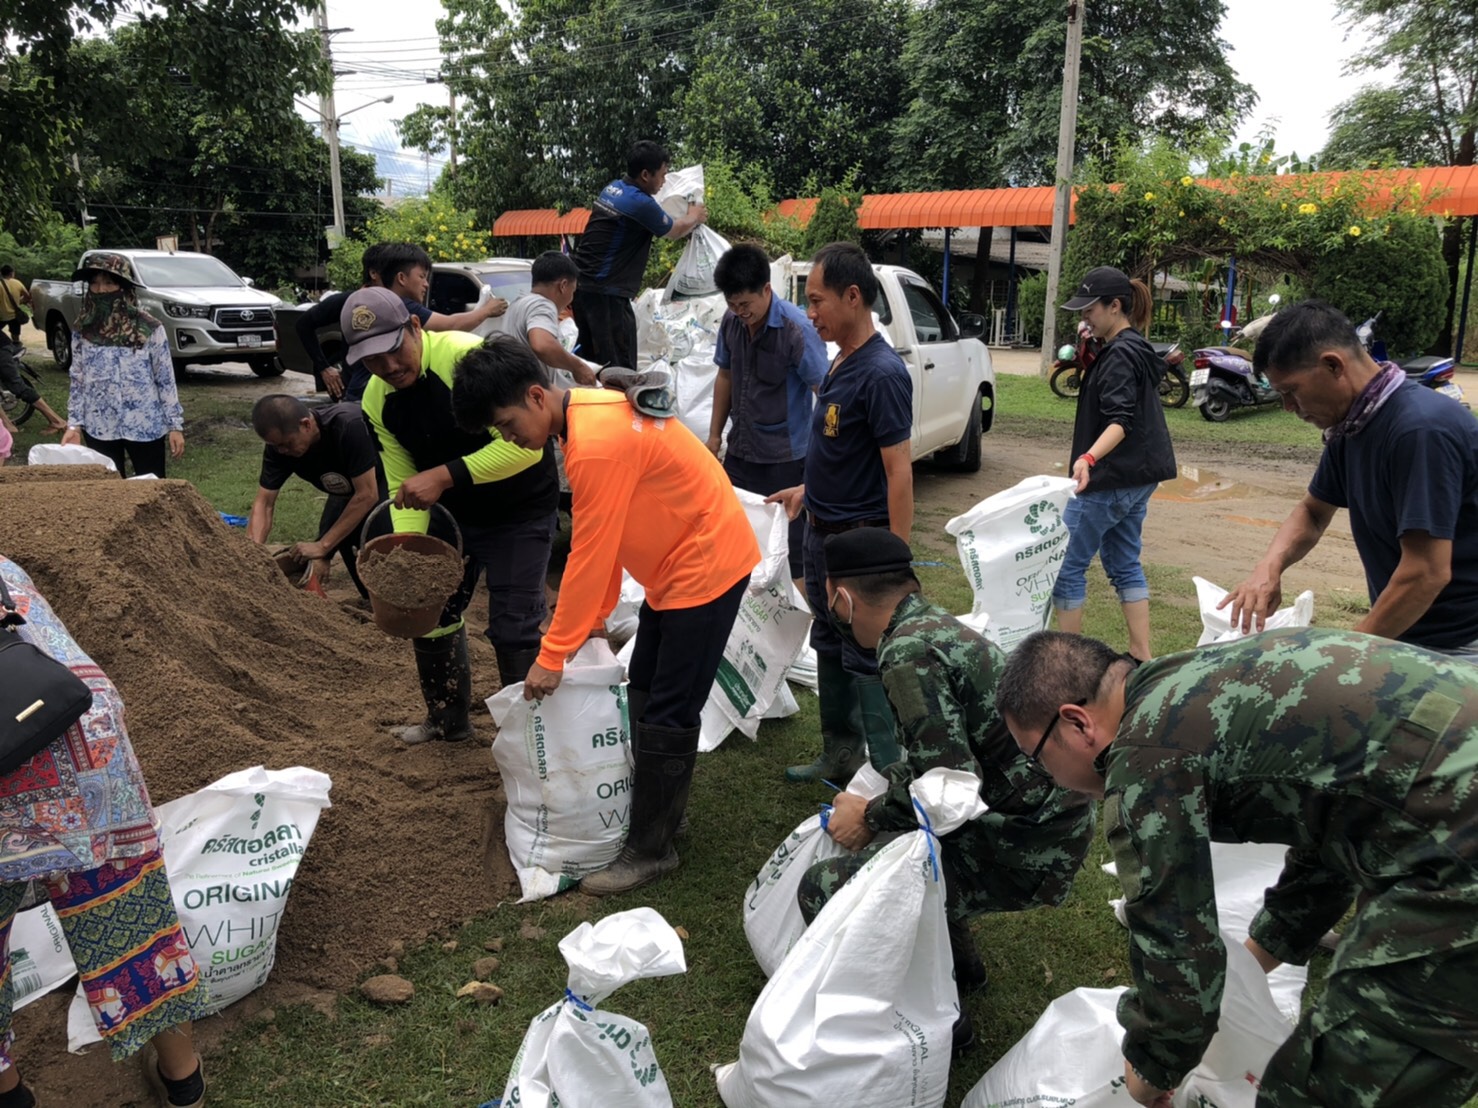 ศป.บส.ชน. จัดกำลังพลช่วยชาวบ้าน ยกสิ่งของขึ้นที่สูง และกรอกกระสอบทรายกั้นน้ำทะลักเข้าบ้านเรือน หลังพายุ “ซินลากูน” ถล่มเป็นวันที่ 3